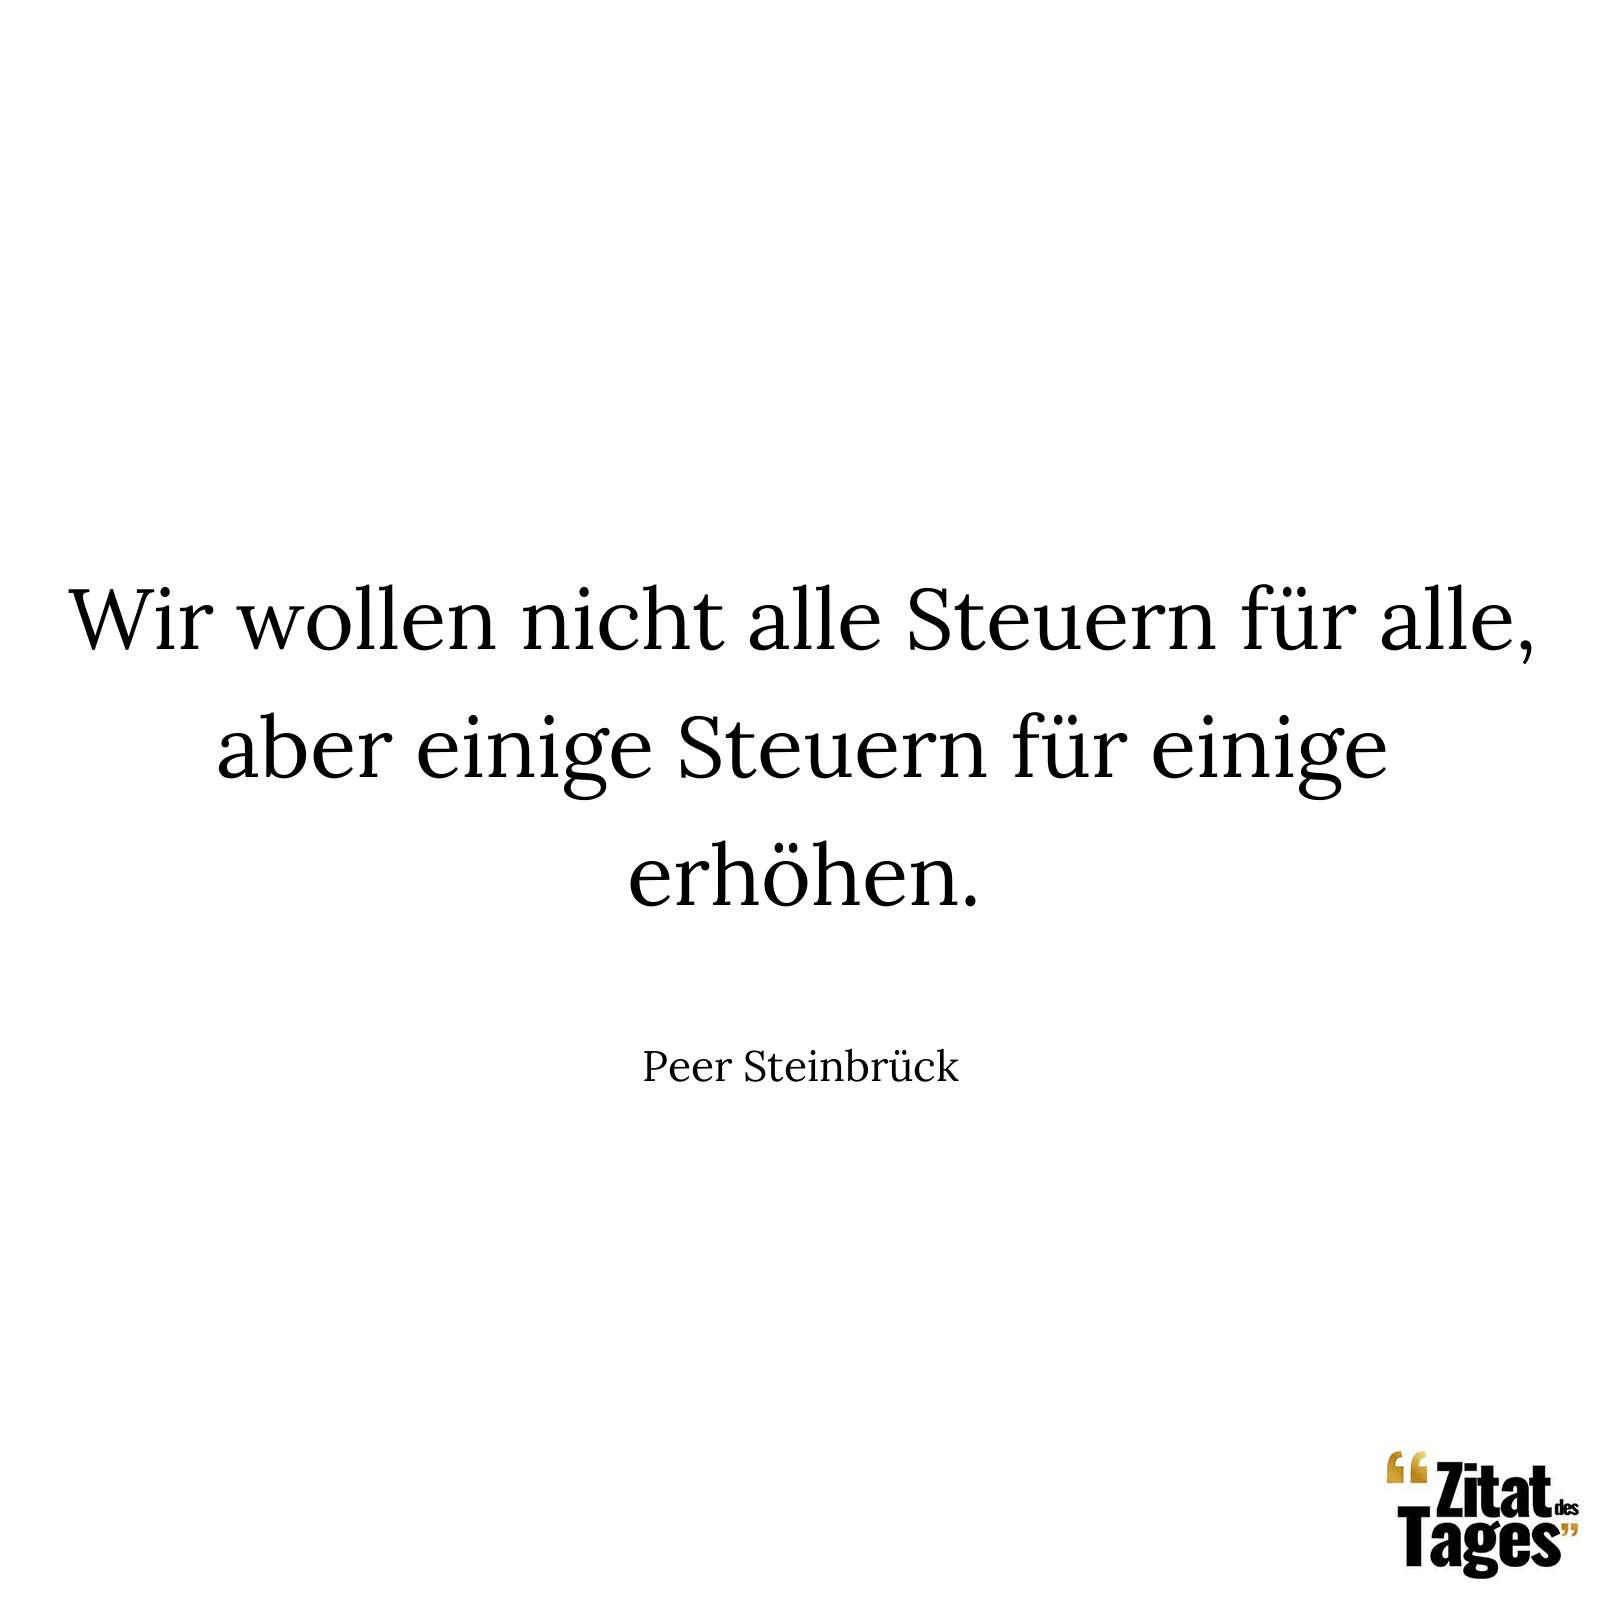 Wir wollen nicht alle Steuern für alle, aber einige Steuern für einige erhöhen. - Peer Steinbrück